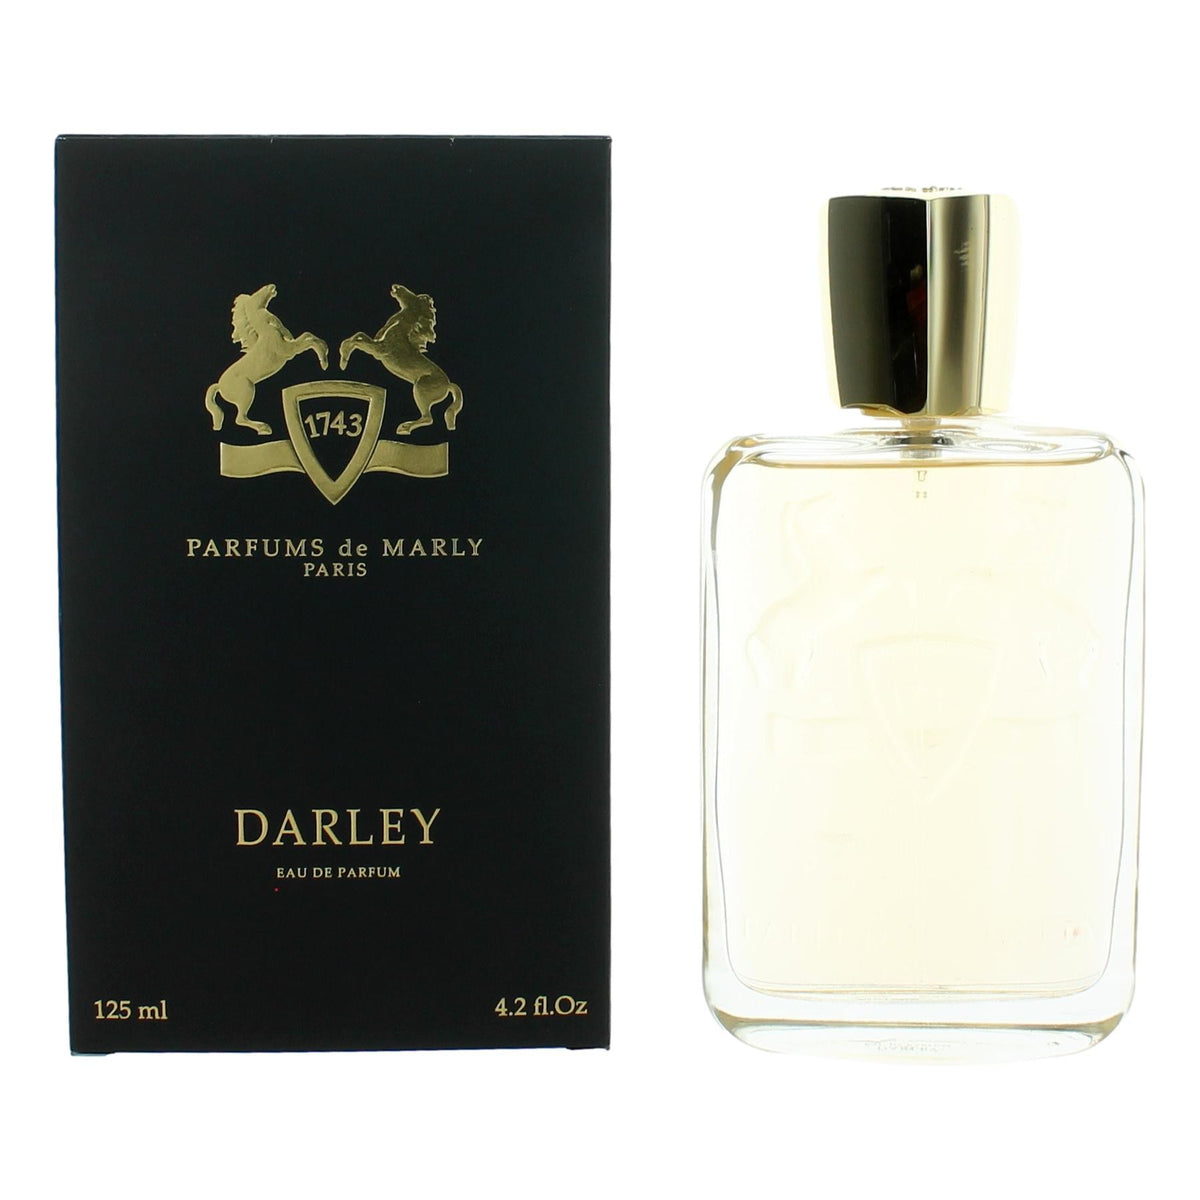 Parfums de Marly Darley by Parfums de Marly, 4.2 oz Eau De Parfum Spray for Men